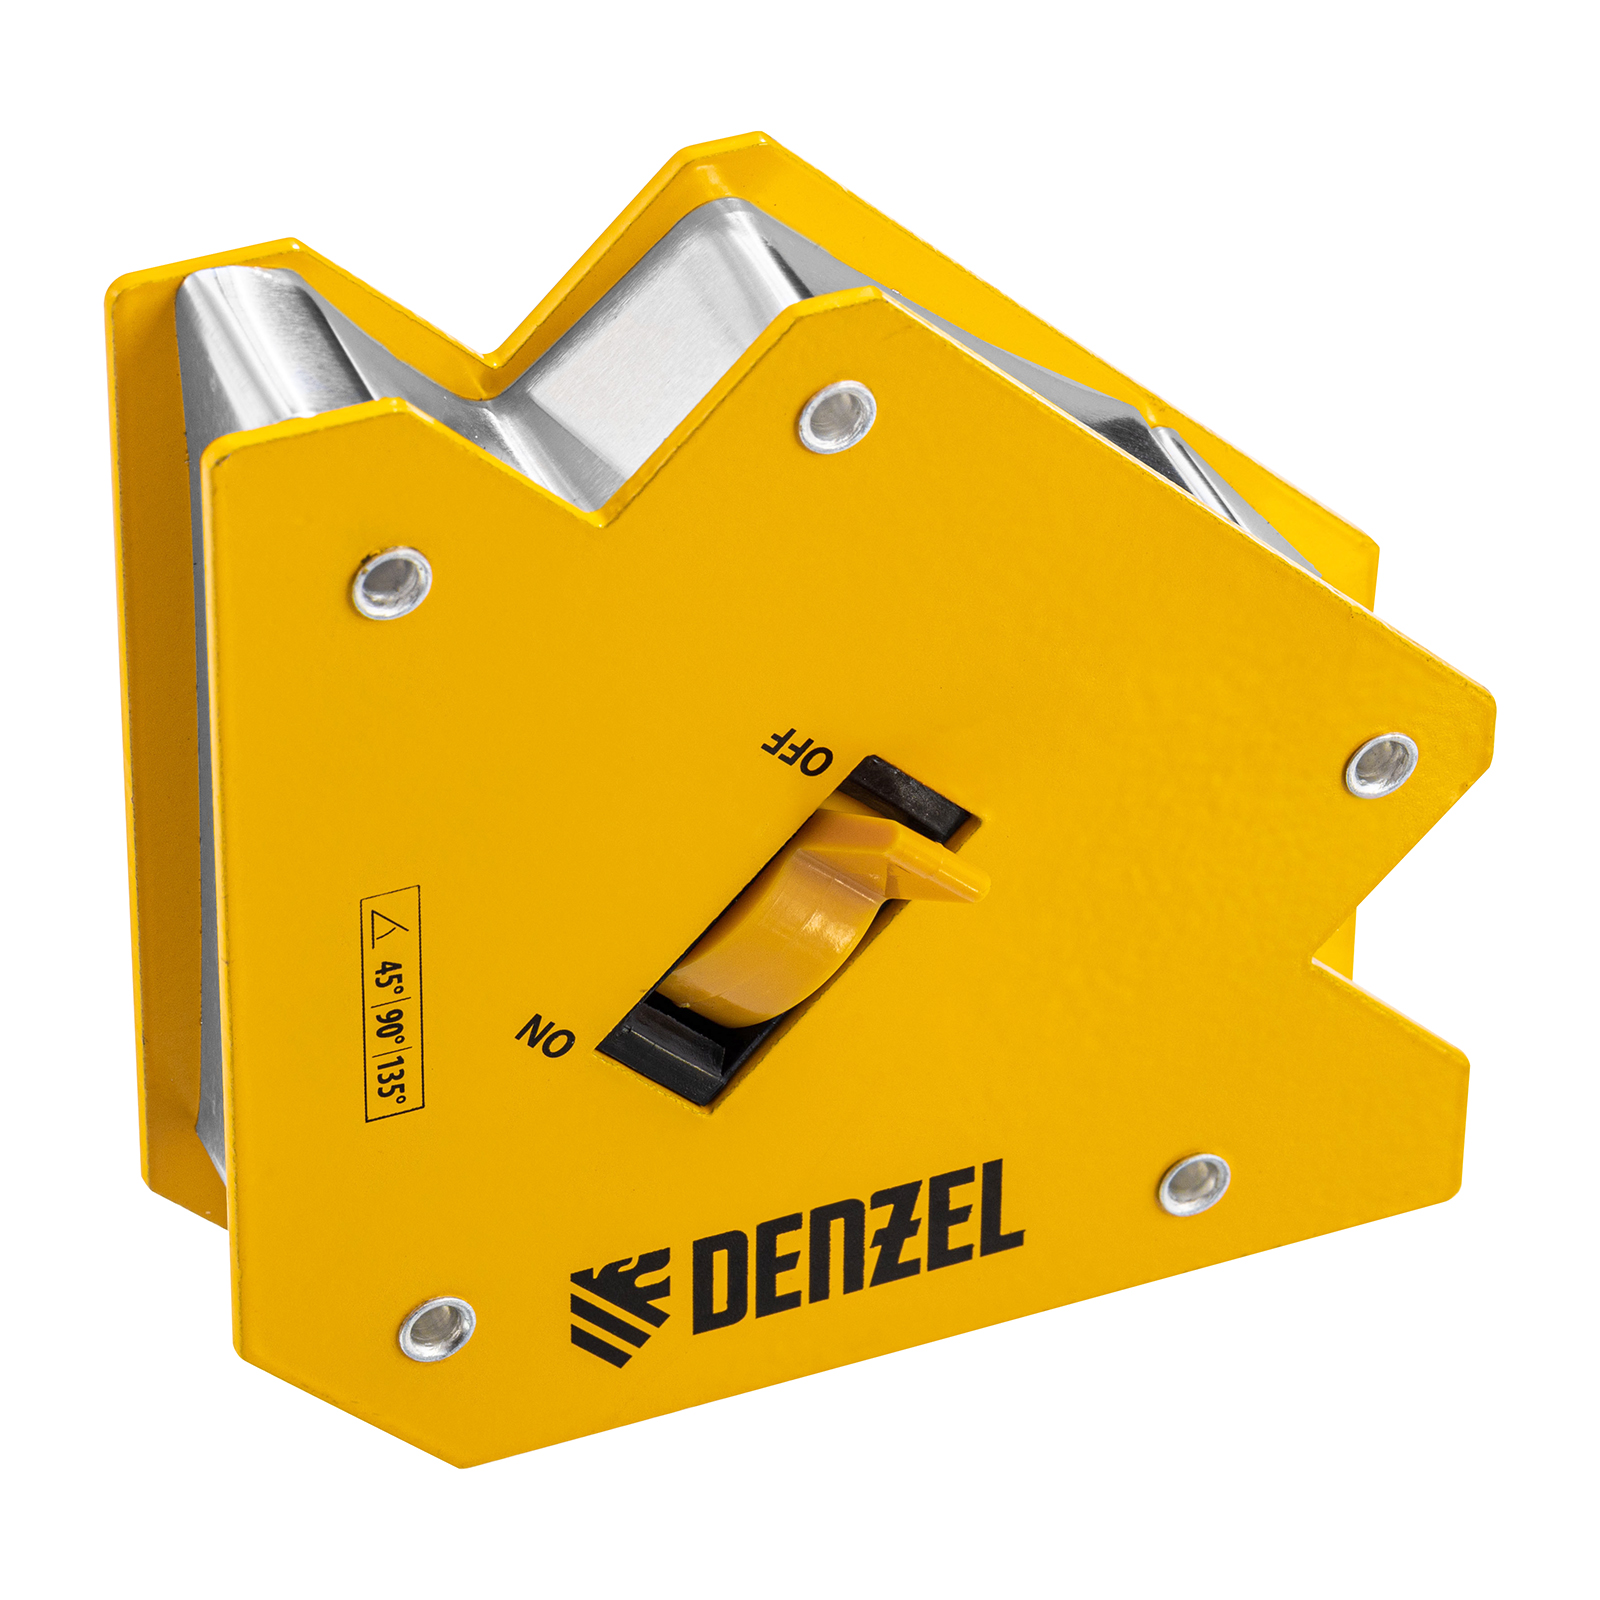 Фиксатор магнитный отключаемый для сварочных работ DENZEL усилие 30 LB, 45х90х135 гр 97563 фиксатор магнитный отключаемый для сварочных работ denzel усилие 30 lb 45х90х135 гр 97563